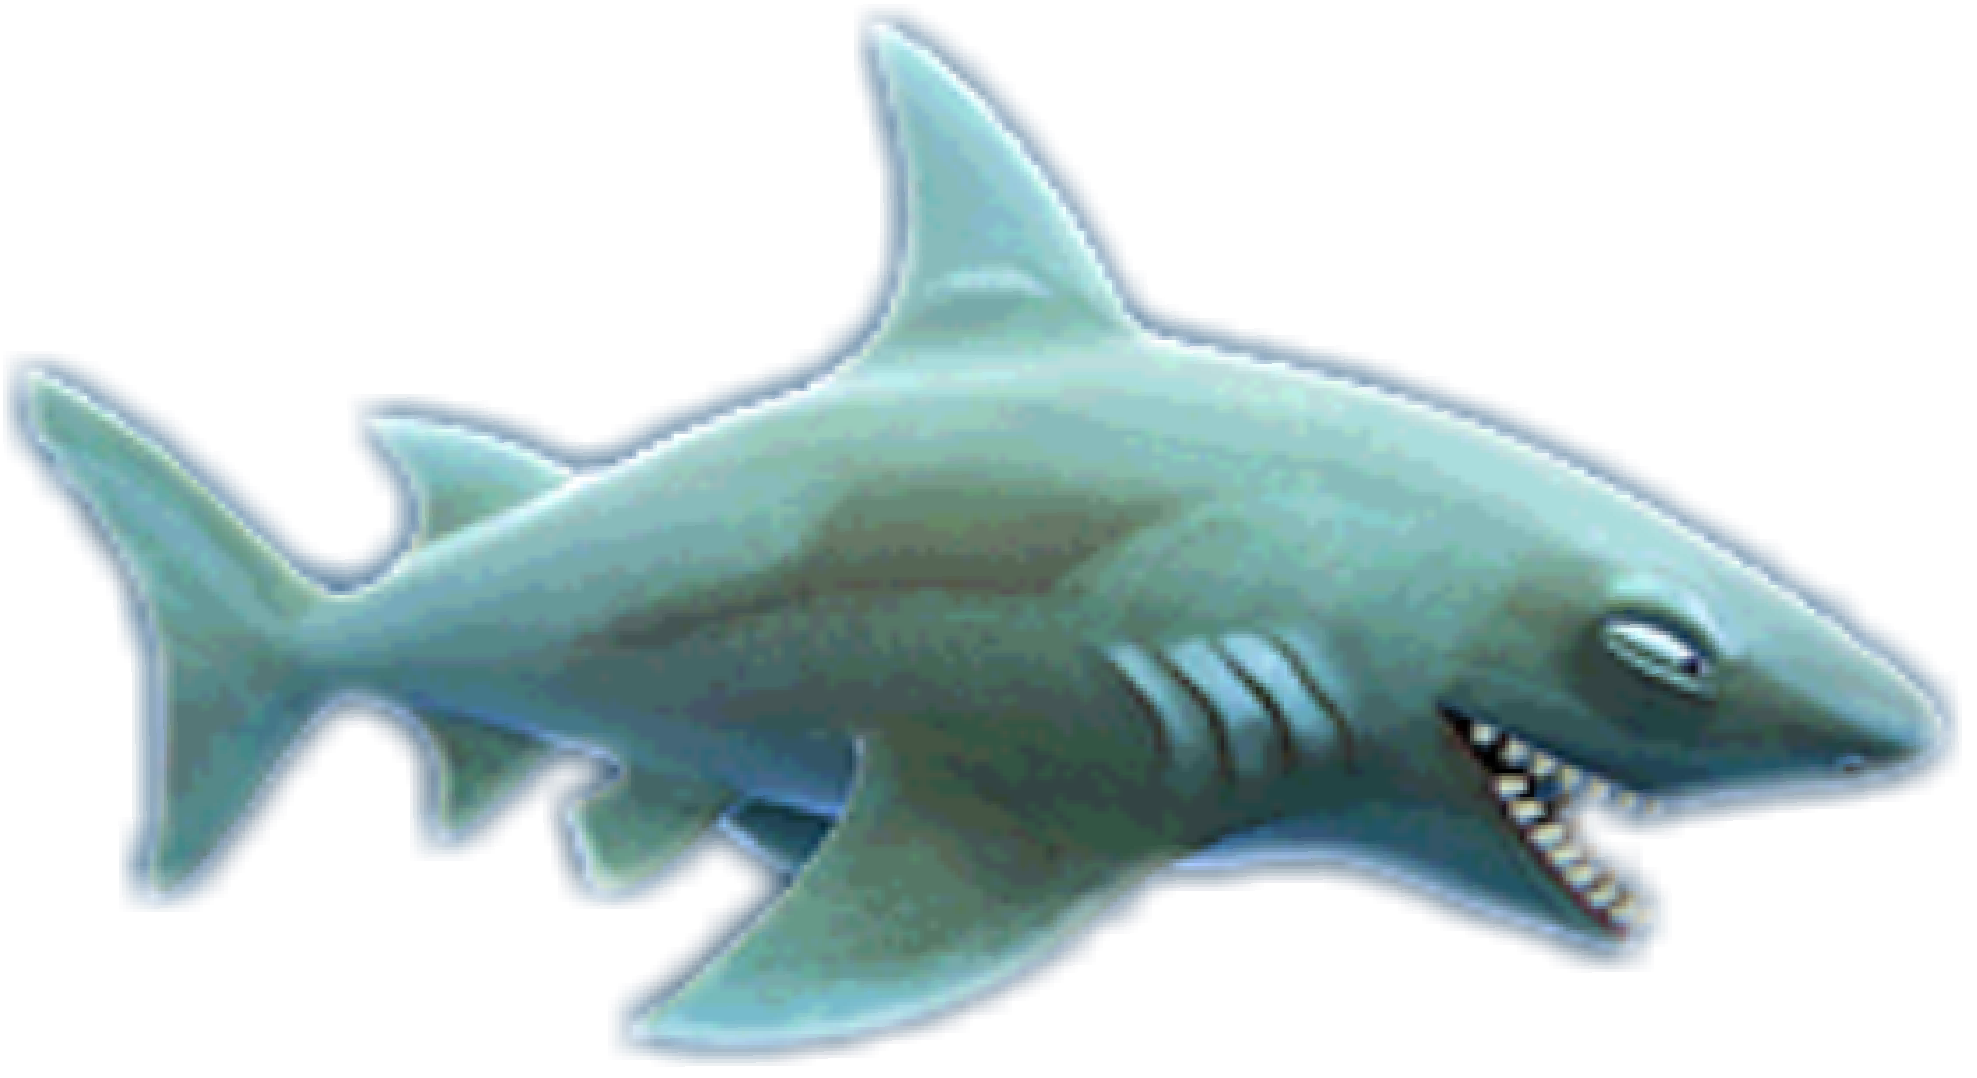 Blue Megalodon Shark Free Download Image PNG Image